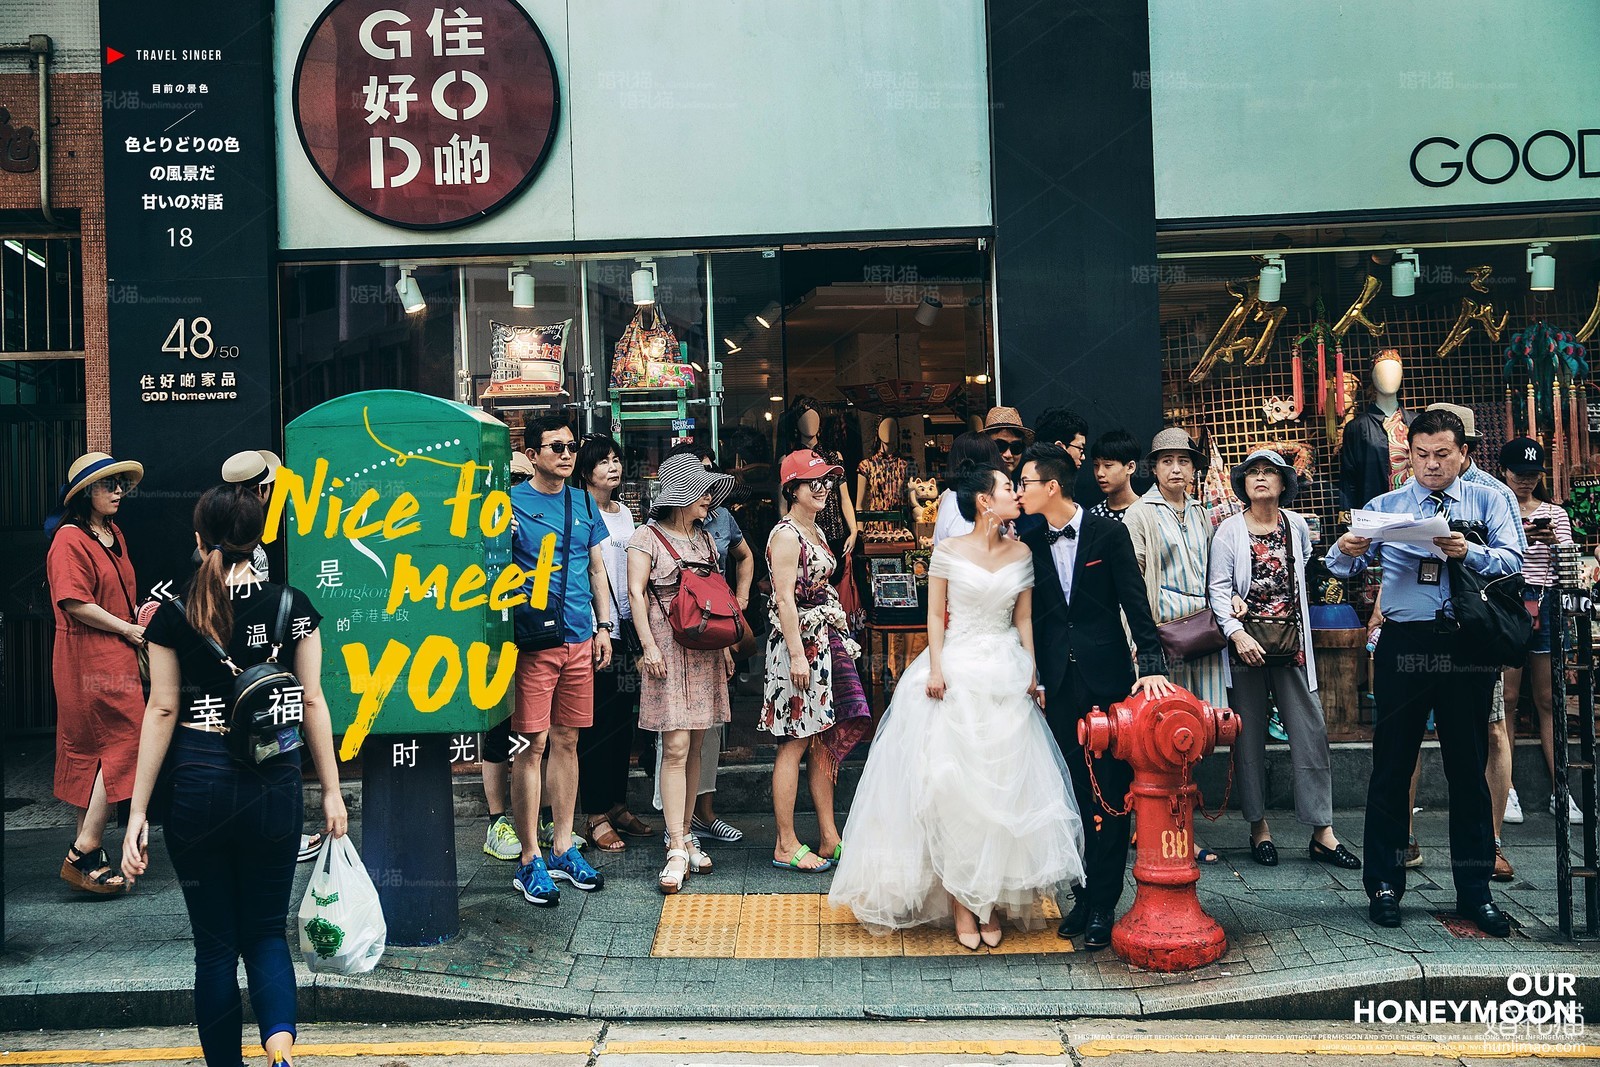 2018年9月深圳结婚照,,深圳婚纱照,婚纱照图片